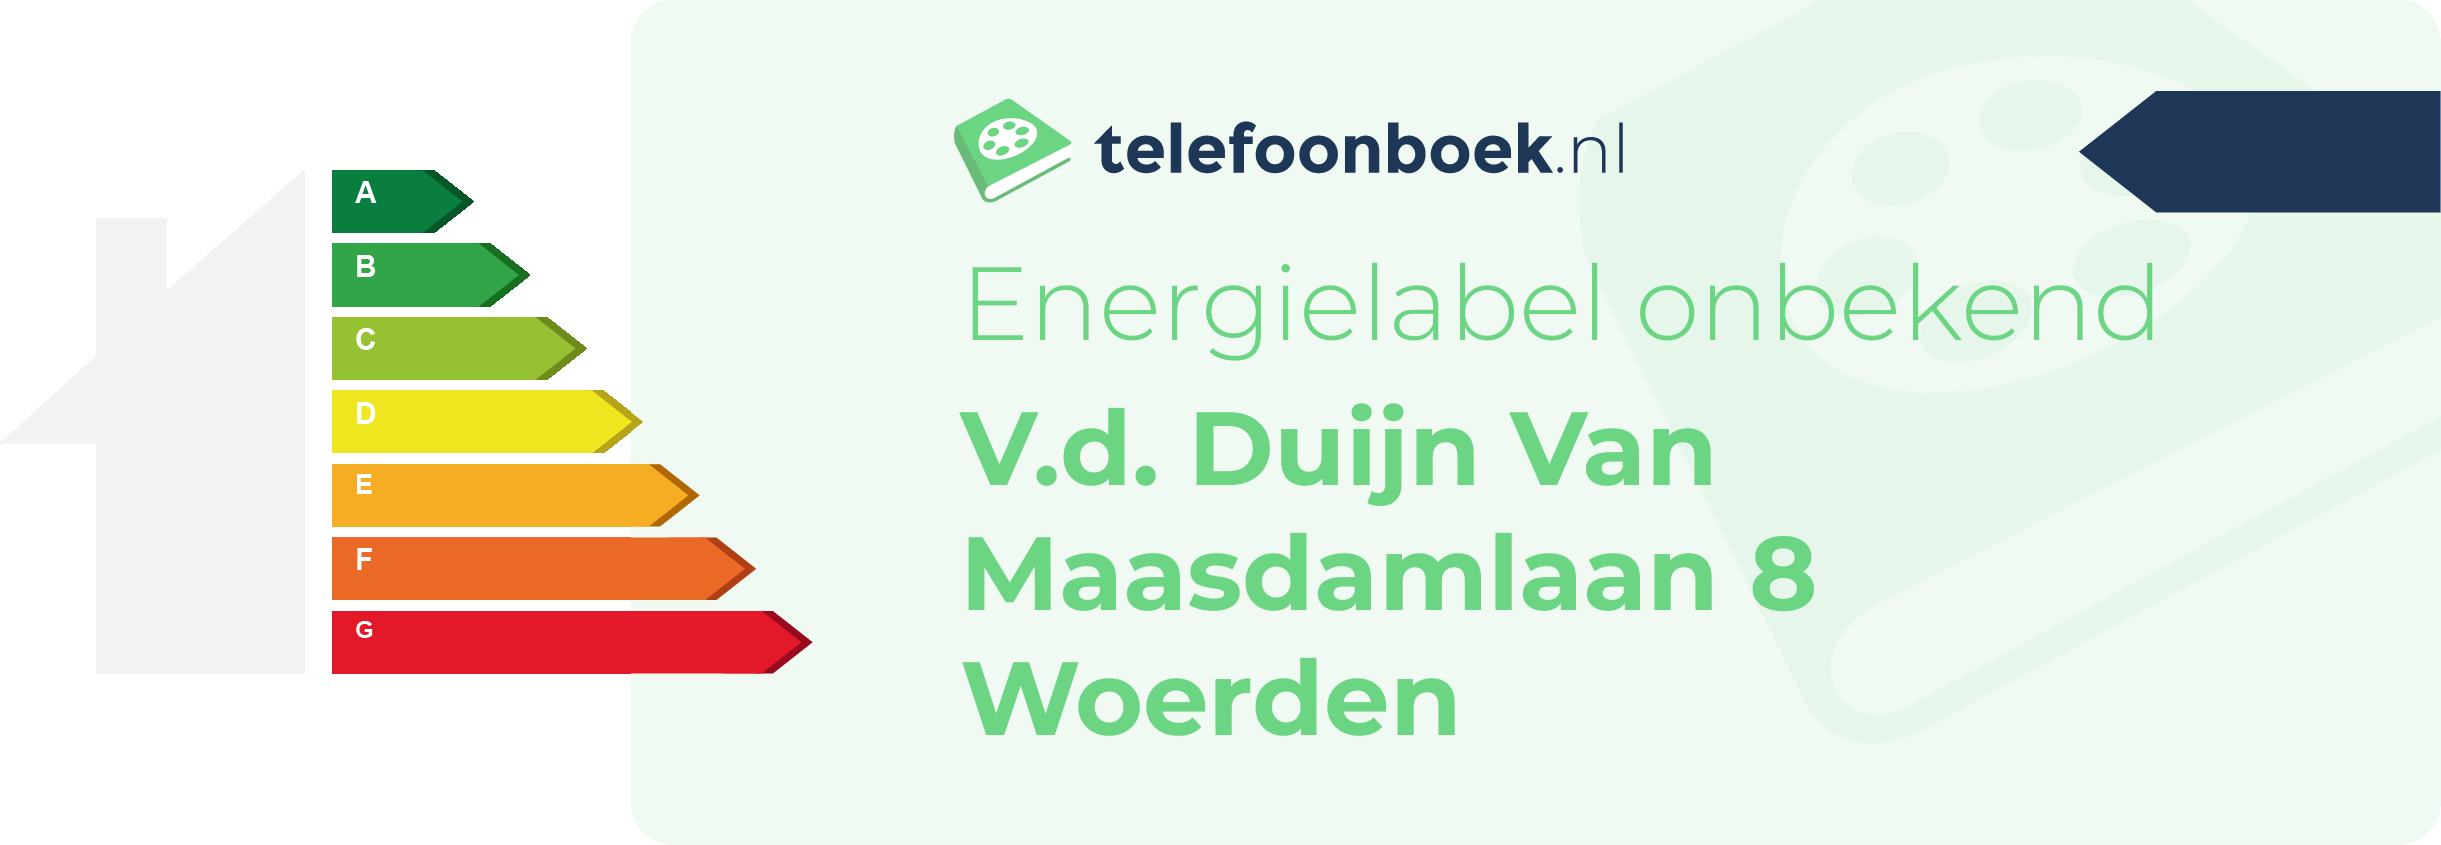 Energielabel V.d. Duijn Van Maasdamlaan 8 Woerden